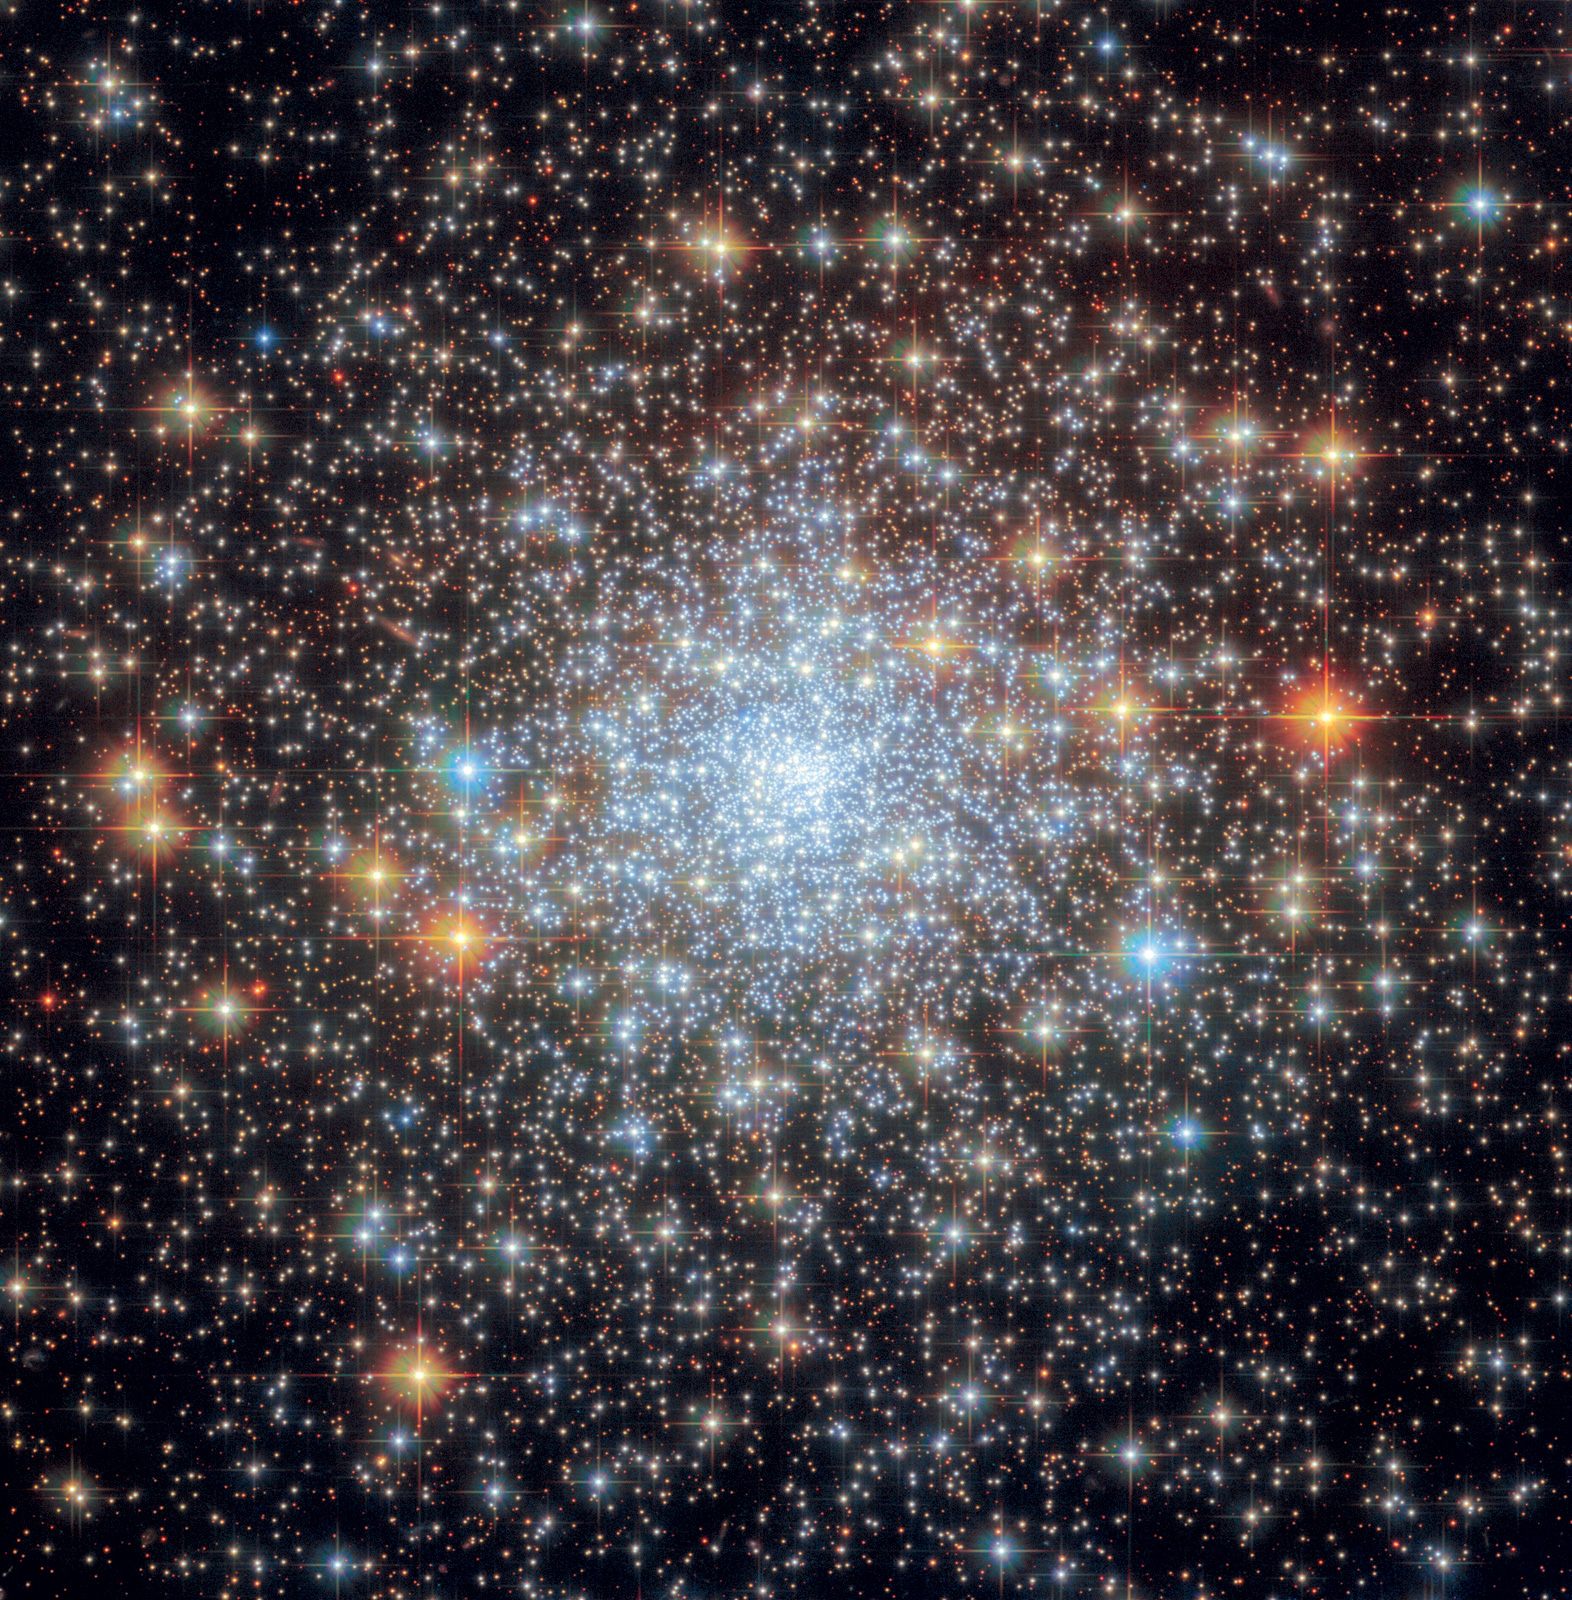 En el cúmulo globular NGC 6652 las estrellas se fusionan en un núcleo brillante en el centro y se extienden gradualmente hacia los bordes, dando paso a un fondo oscuro y vacío. Cúmulo globular NGC 6652, 2023. Fotografía del ESA/Hubble & NASA, A. Sarajedini, G. Piotto